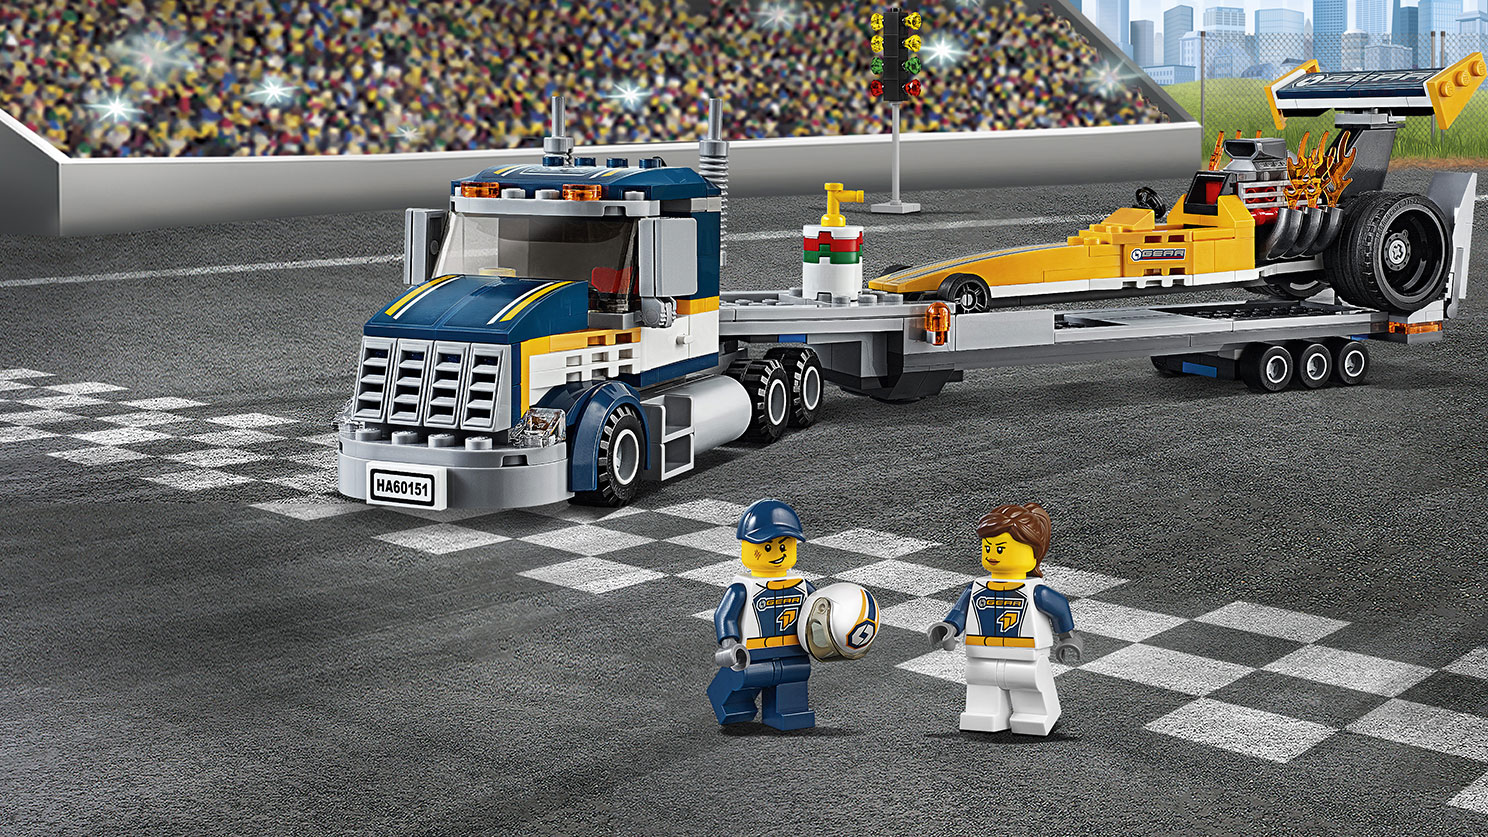 Dragster Transporter 60151 - LEGO® City Sets for kids